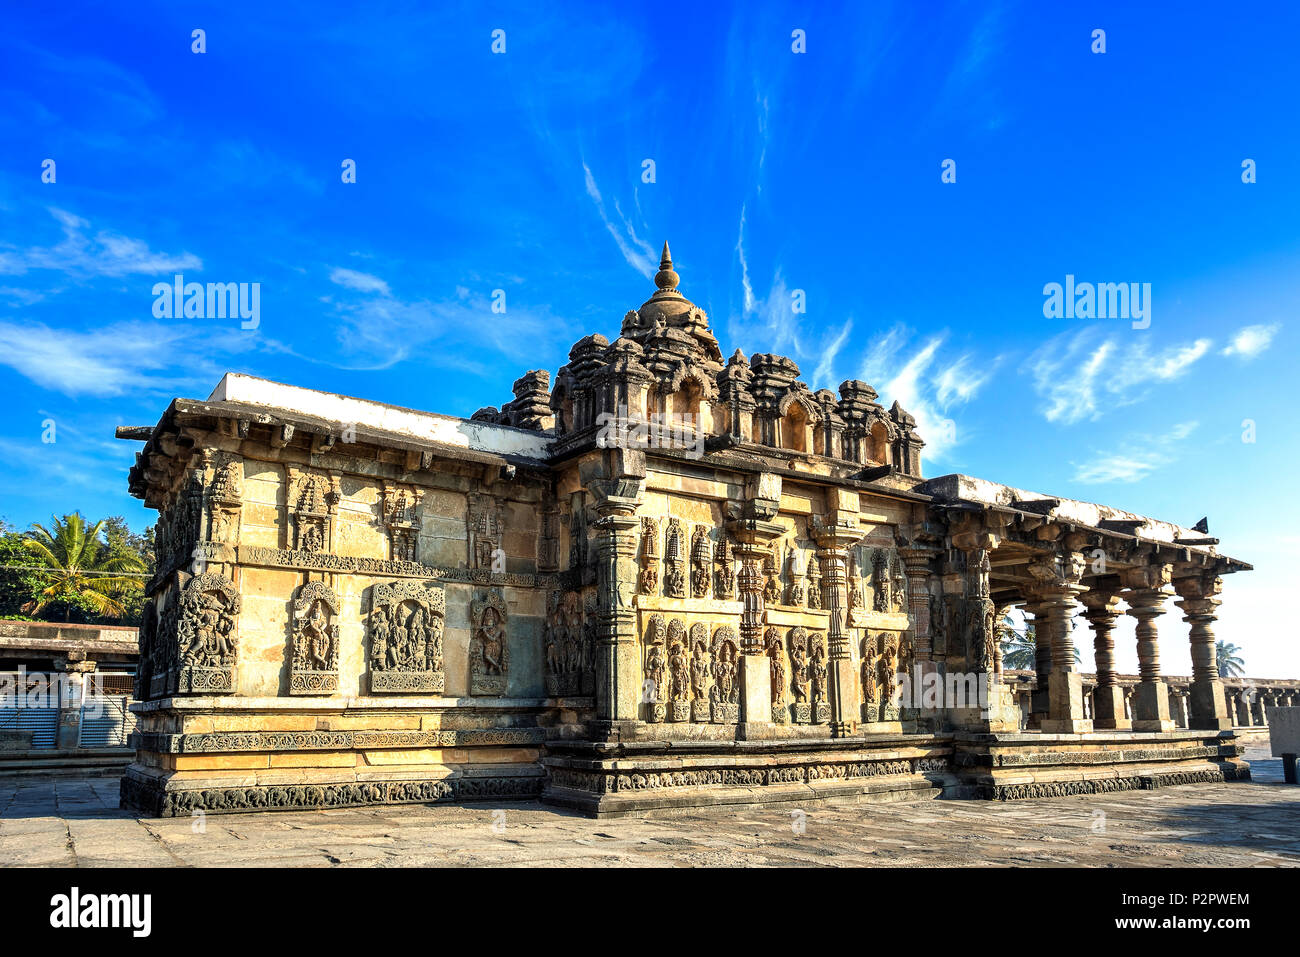 L'intérieur du complexe, l'Andal Chennakeshava Temple vu avec toutes ses sculptures sur les murs extérieurs. Belur, Karnataka, Inde. Banque D'Images